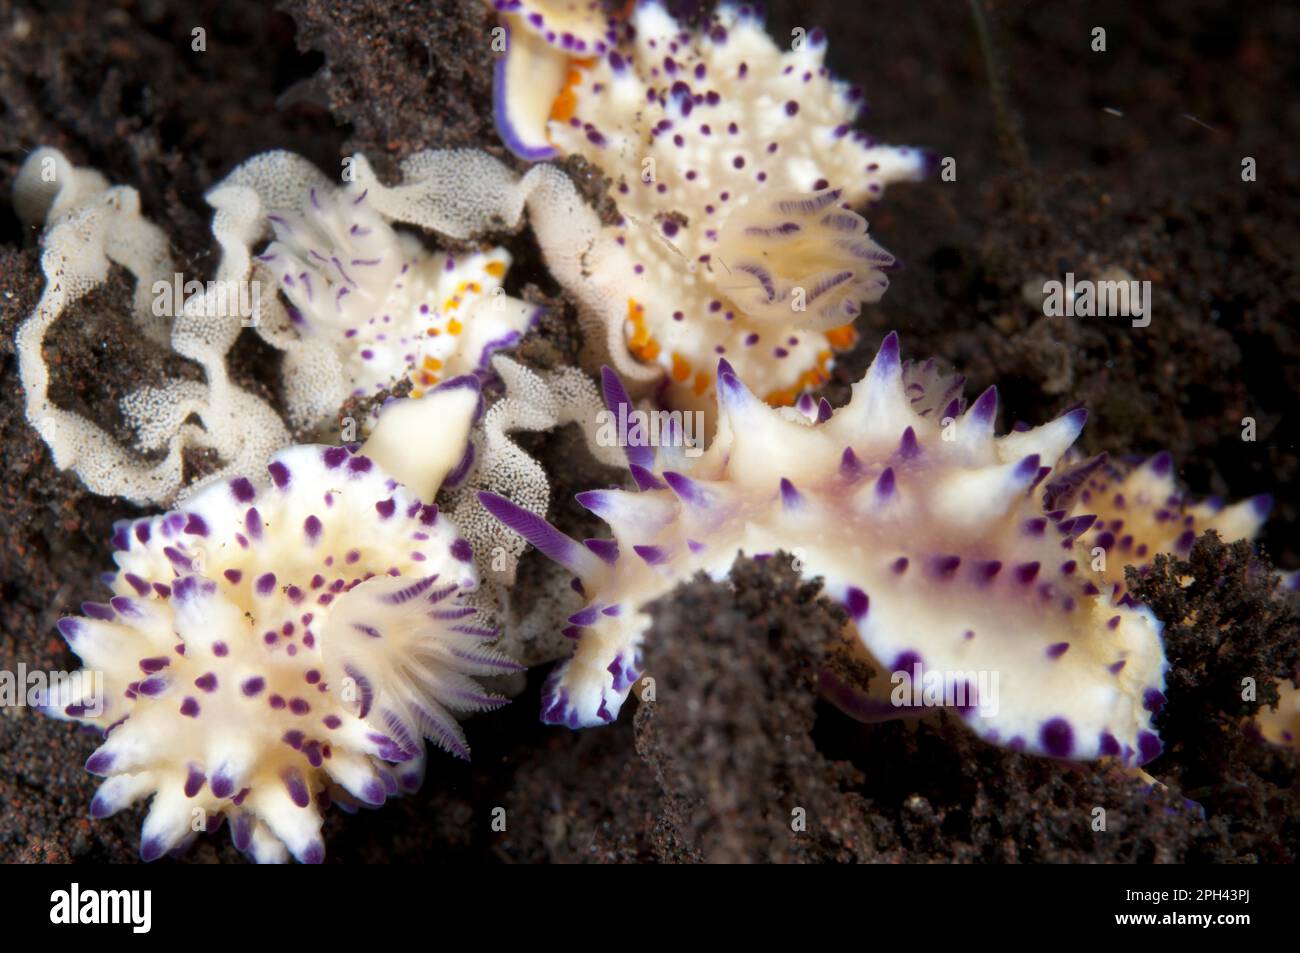 Mehrköpfige Mexichromis Nudibranch (Mexichromis multituberculata) Erwachsene, Gruppe mit Eiern auf Sand, Seraya, Bali, Lesser Sunda Islands, Indonesien Stockfoto